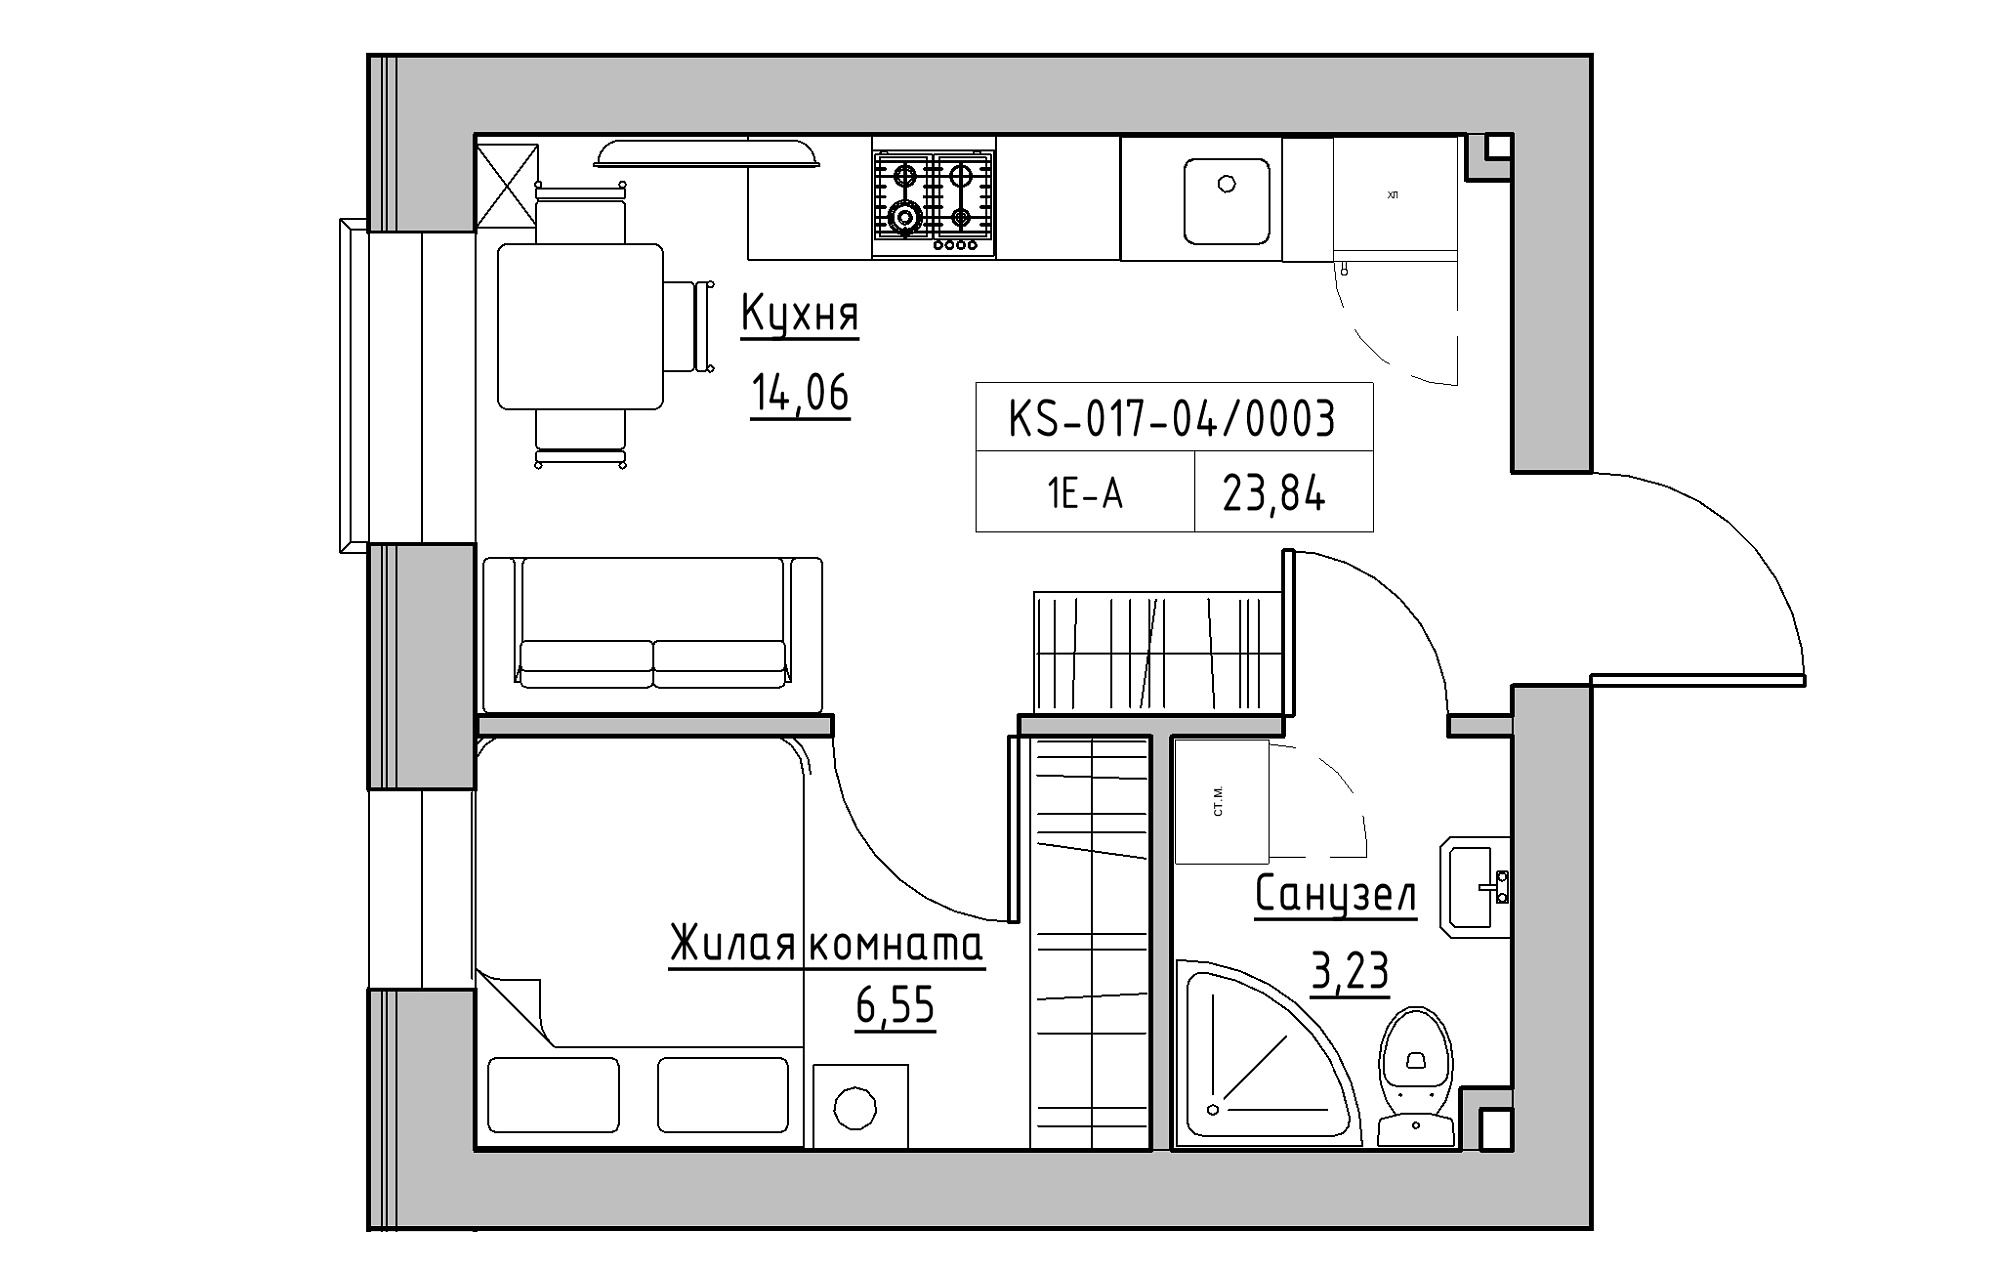 Планировка 1-к квартира площей 23.84м2, KS-017-04/0003.